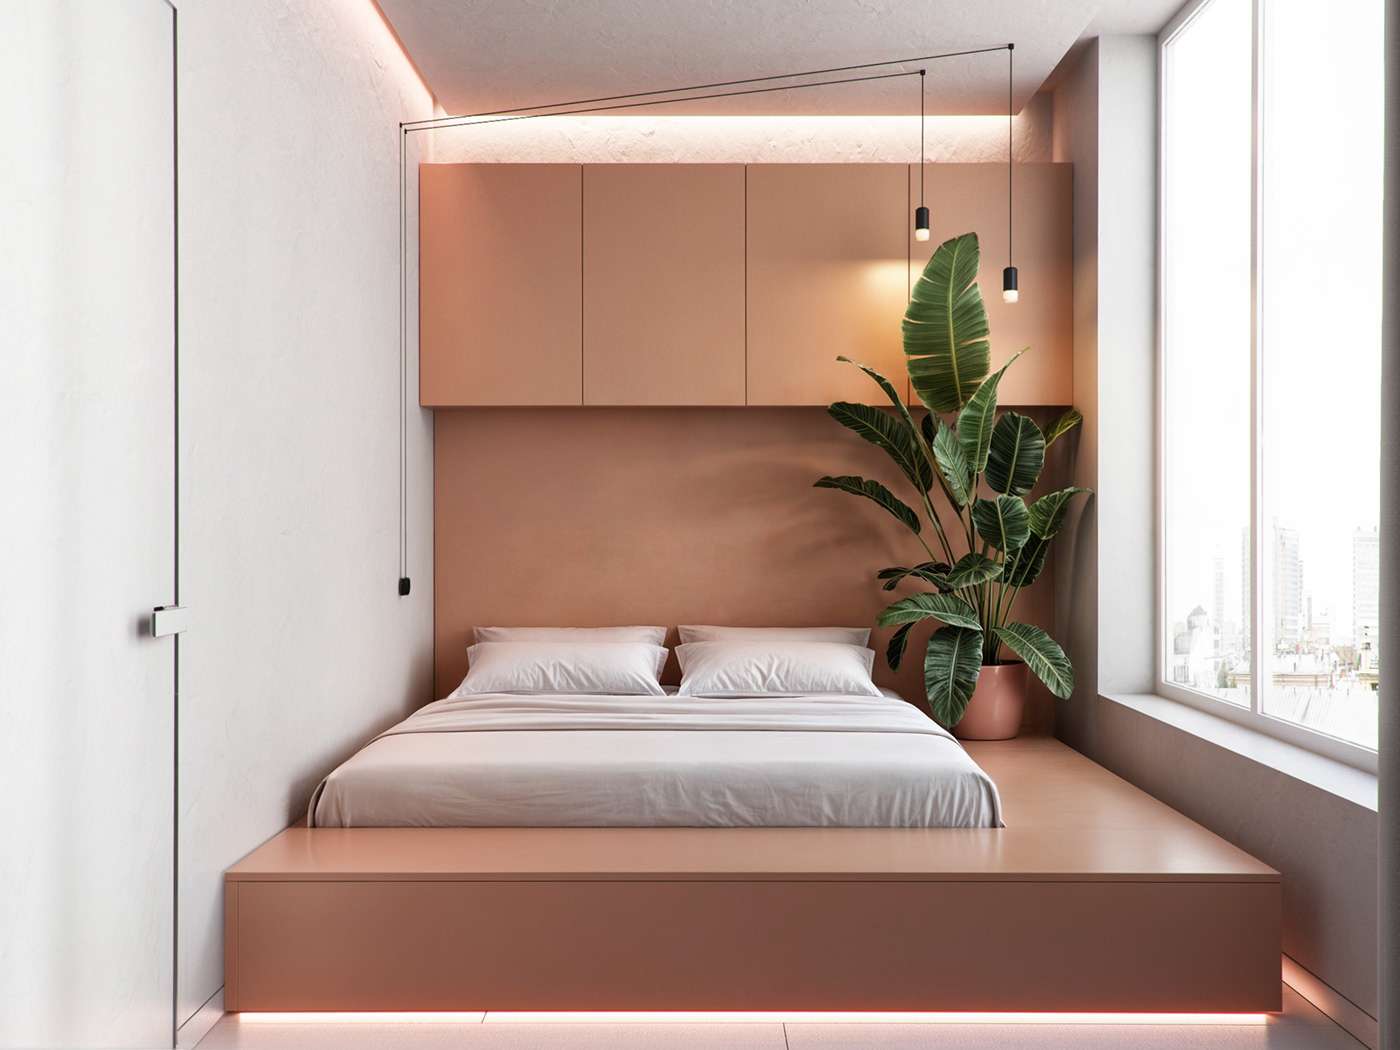 Bố trí cây xanh trong phòng ngủ tạo không gian sinh động và thư giãn, tốt cho sức khỏe